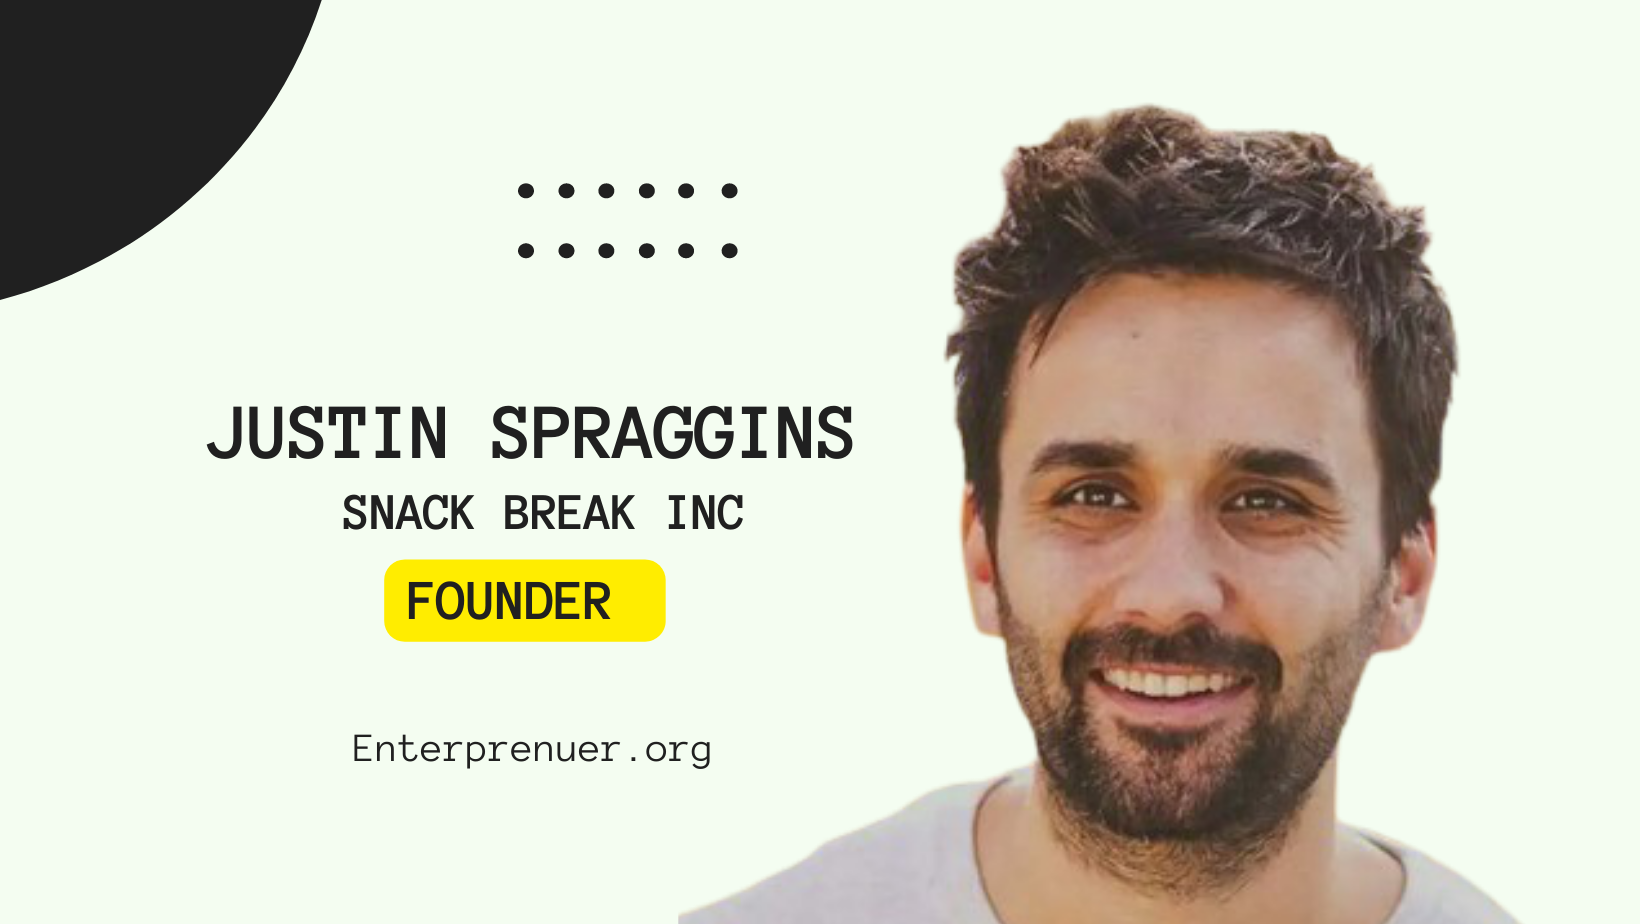 Justin Spraggins Founder of Snack Break Inc